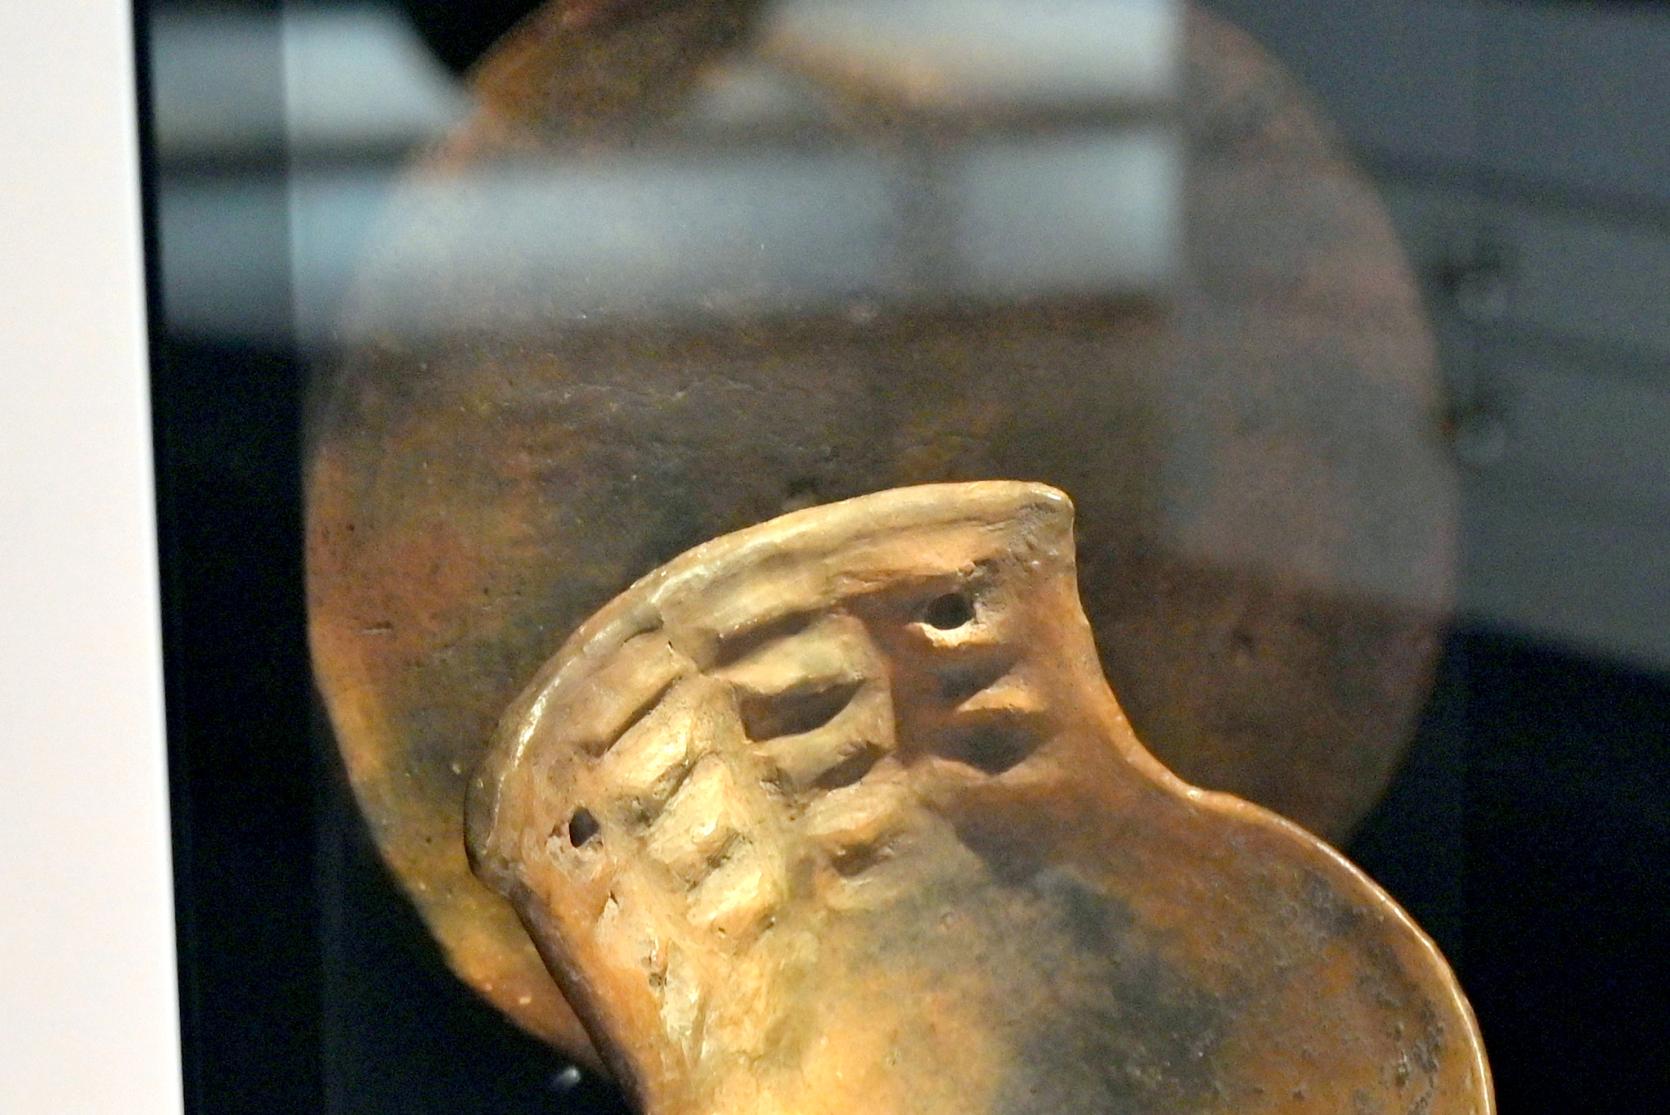 Backteller, Neolithikum (Jungsteinzeit), 5500 - 1700 v. Chr., 3800 - 3600 v. Chr., Bild 1/2